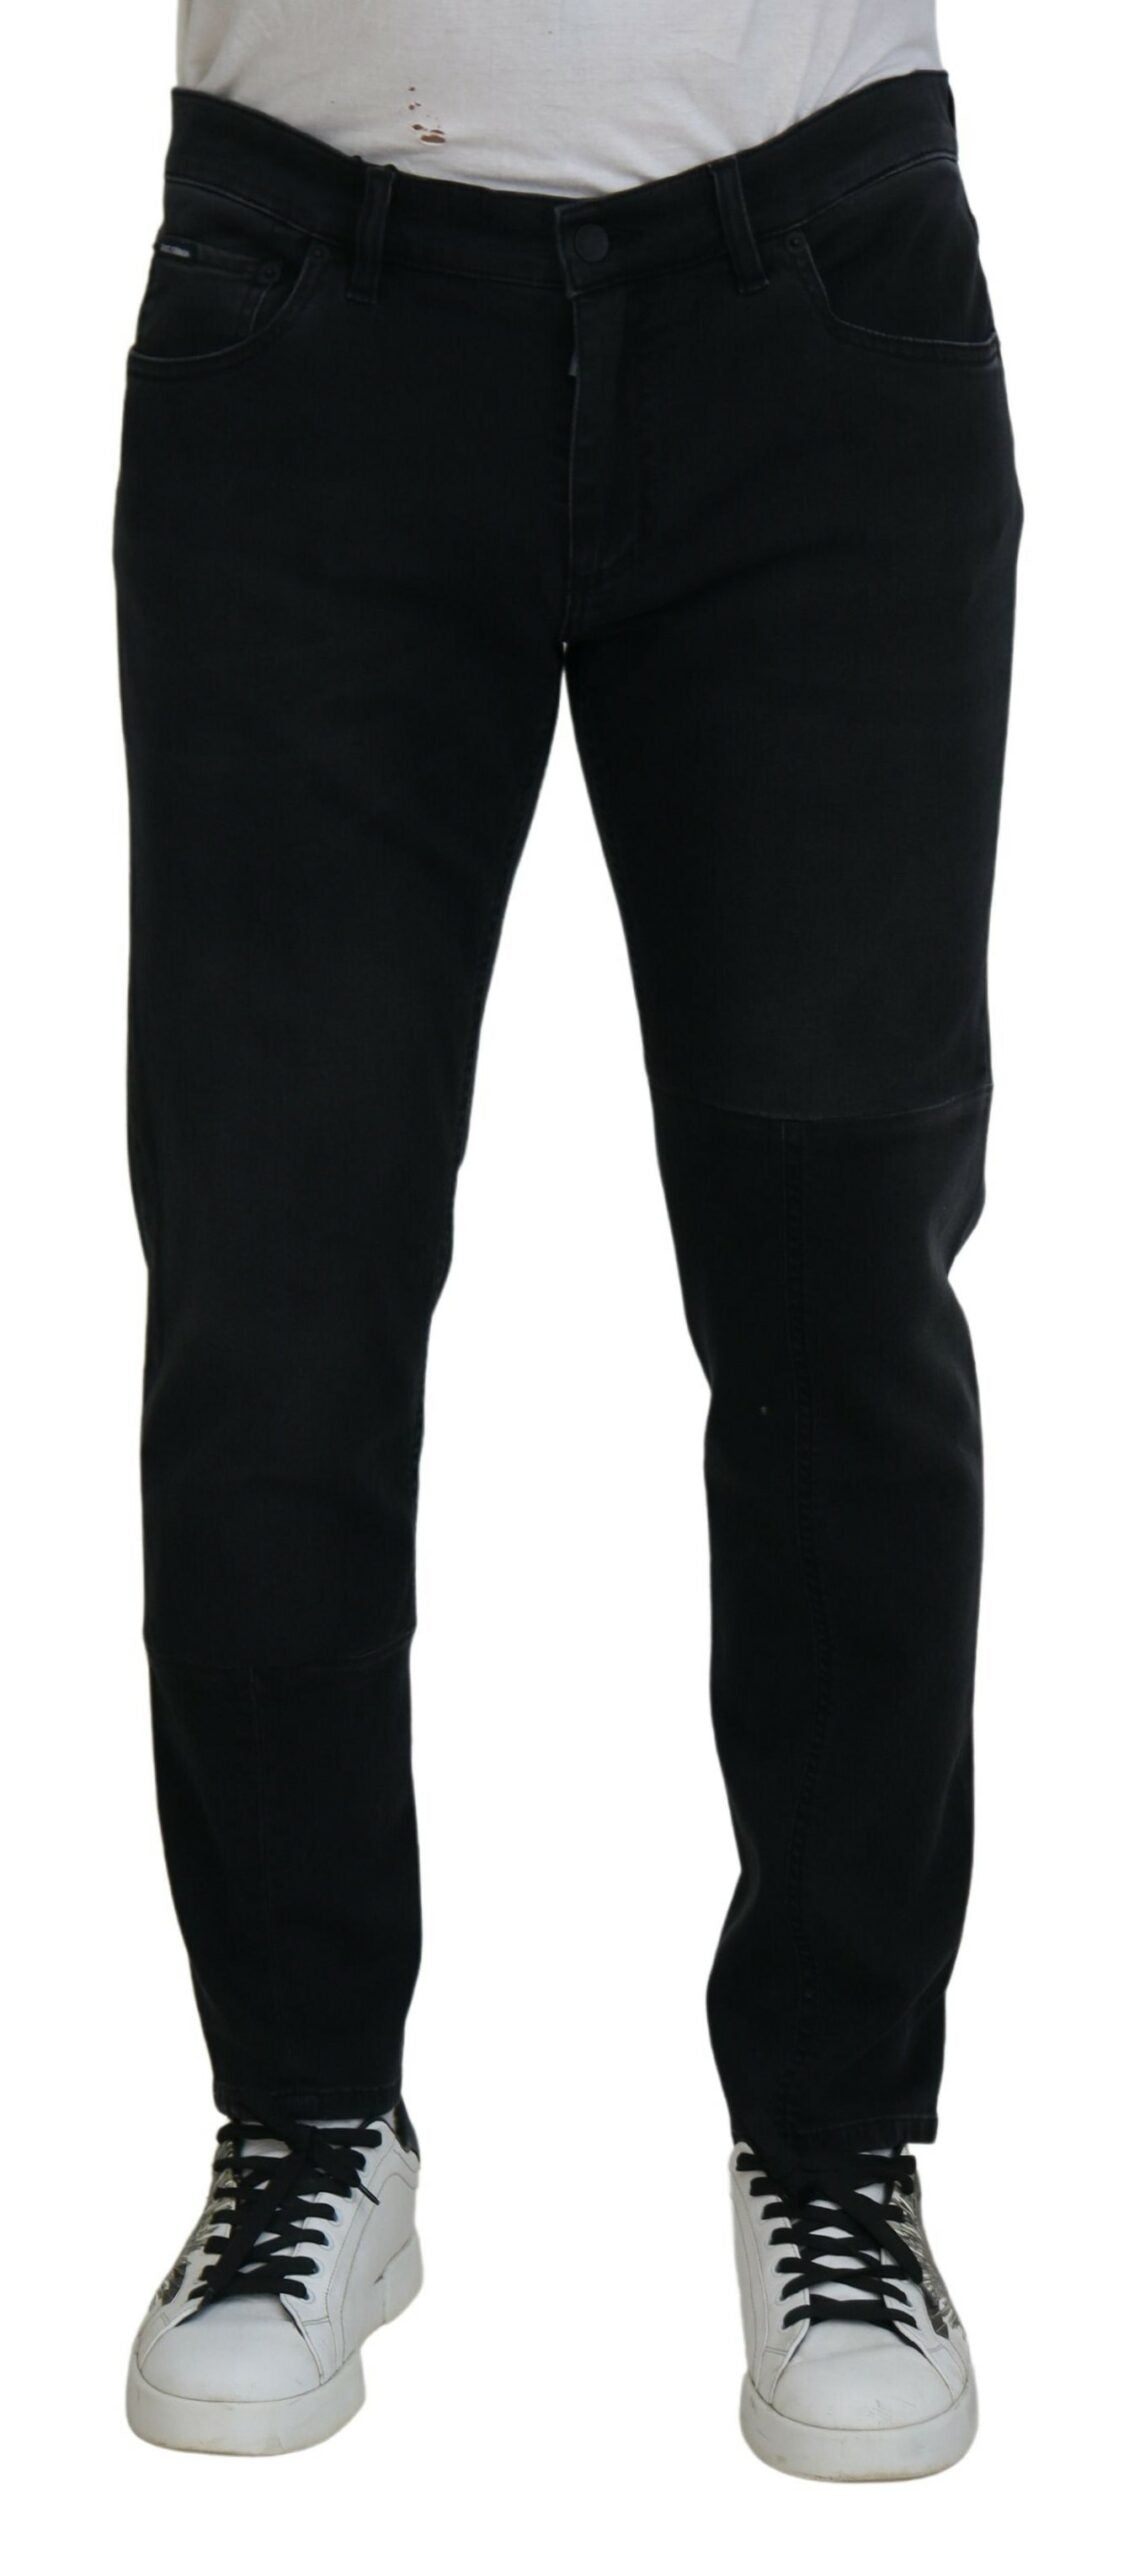 Dolce & Gabbana Chic Black Skinny Denim Jeans